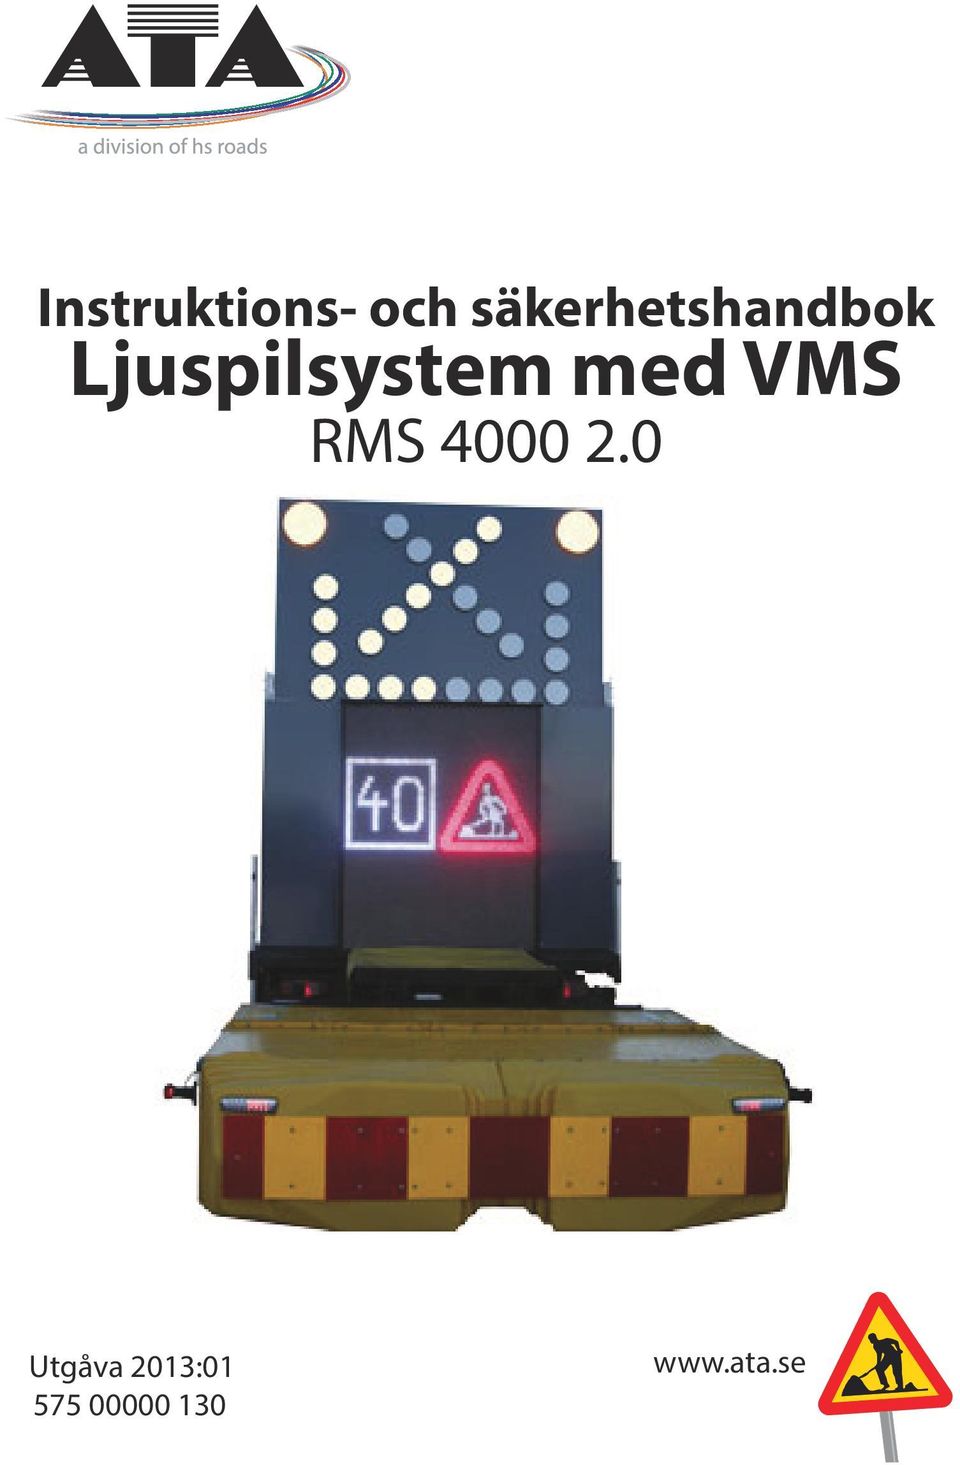 Ljuspilsystem med VMS